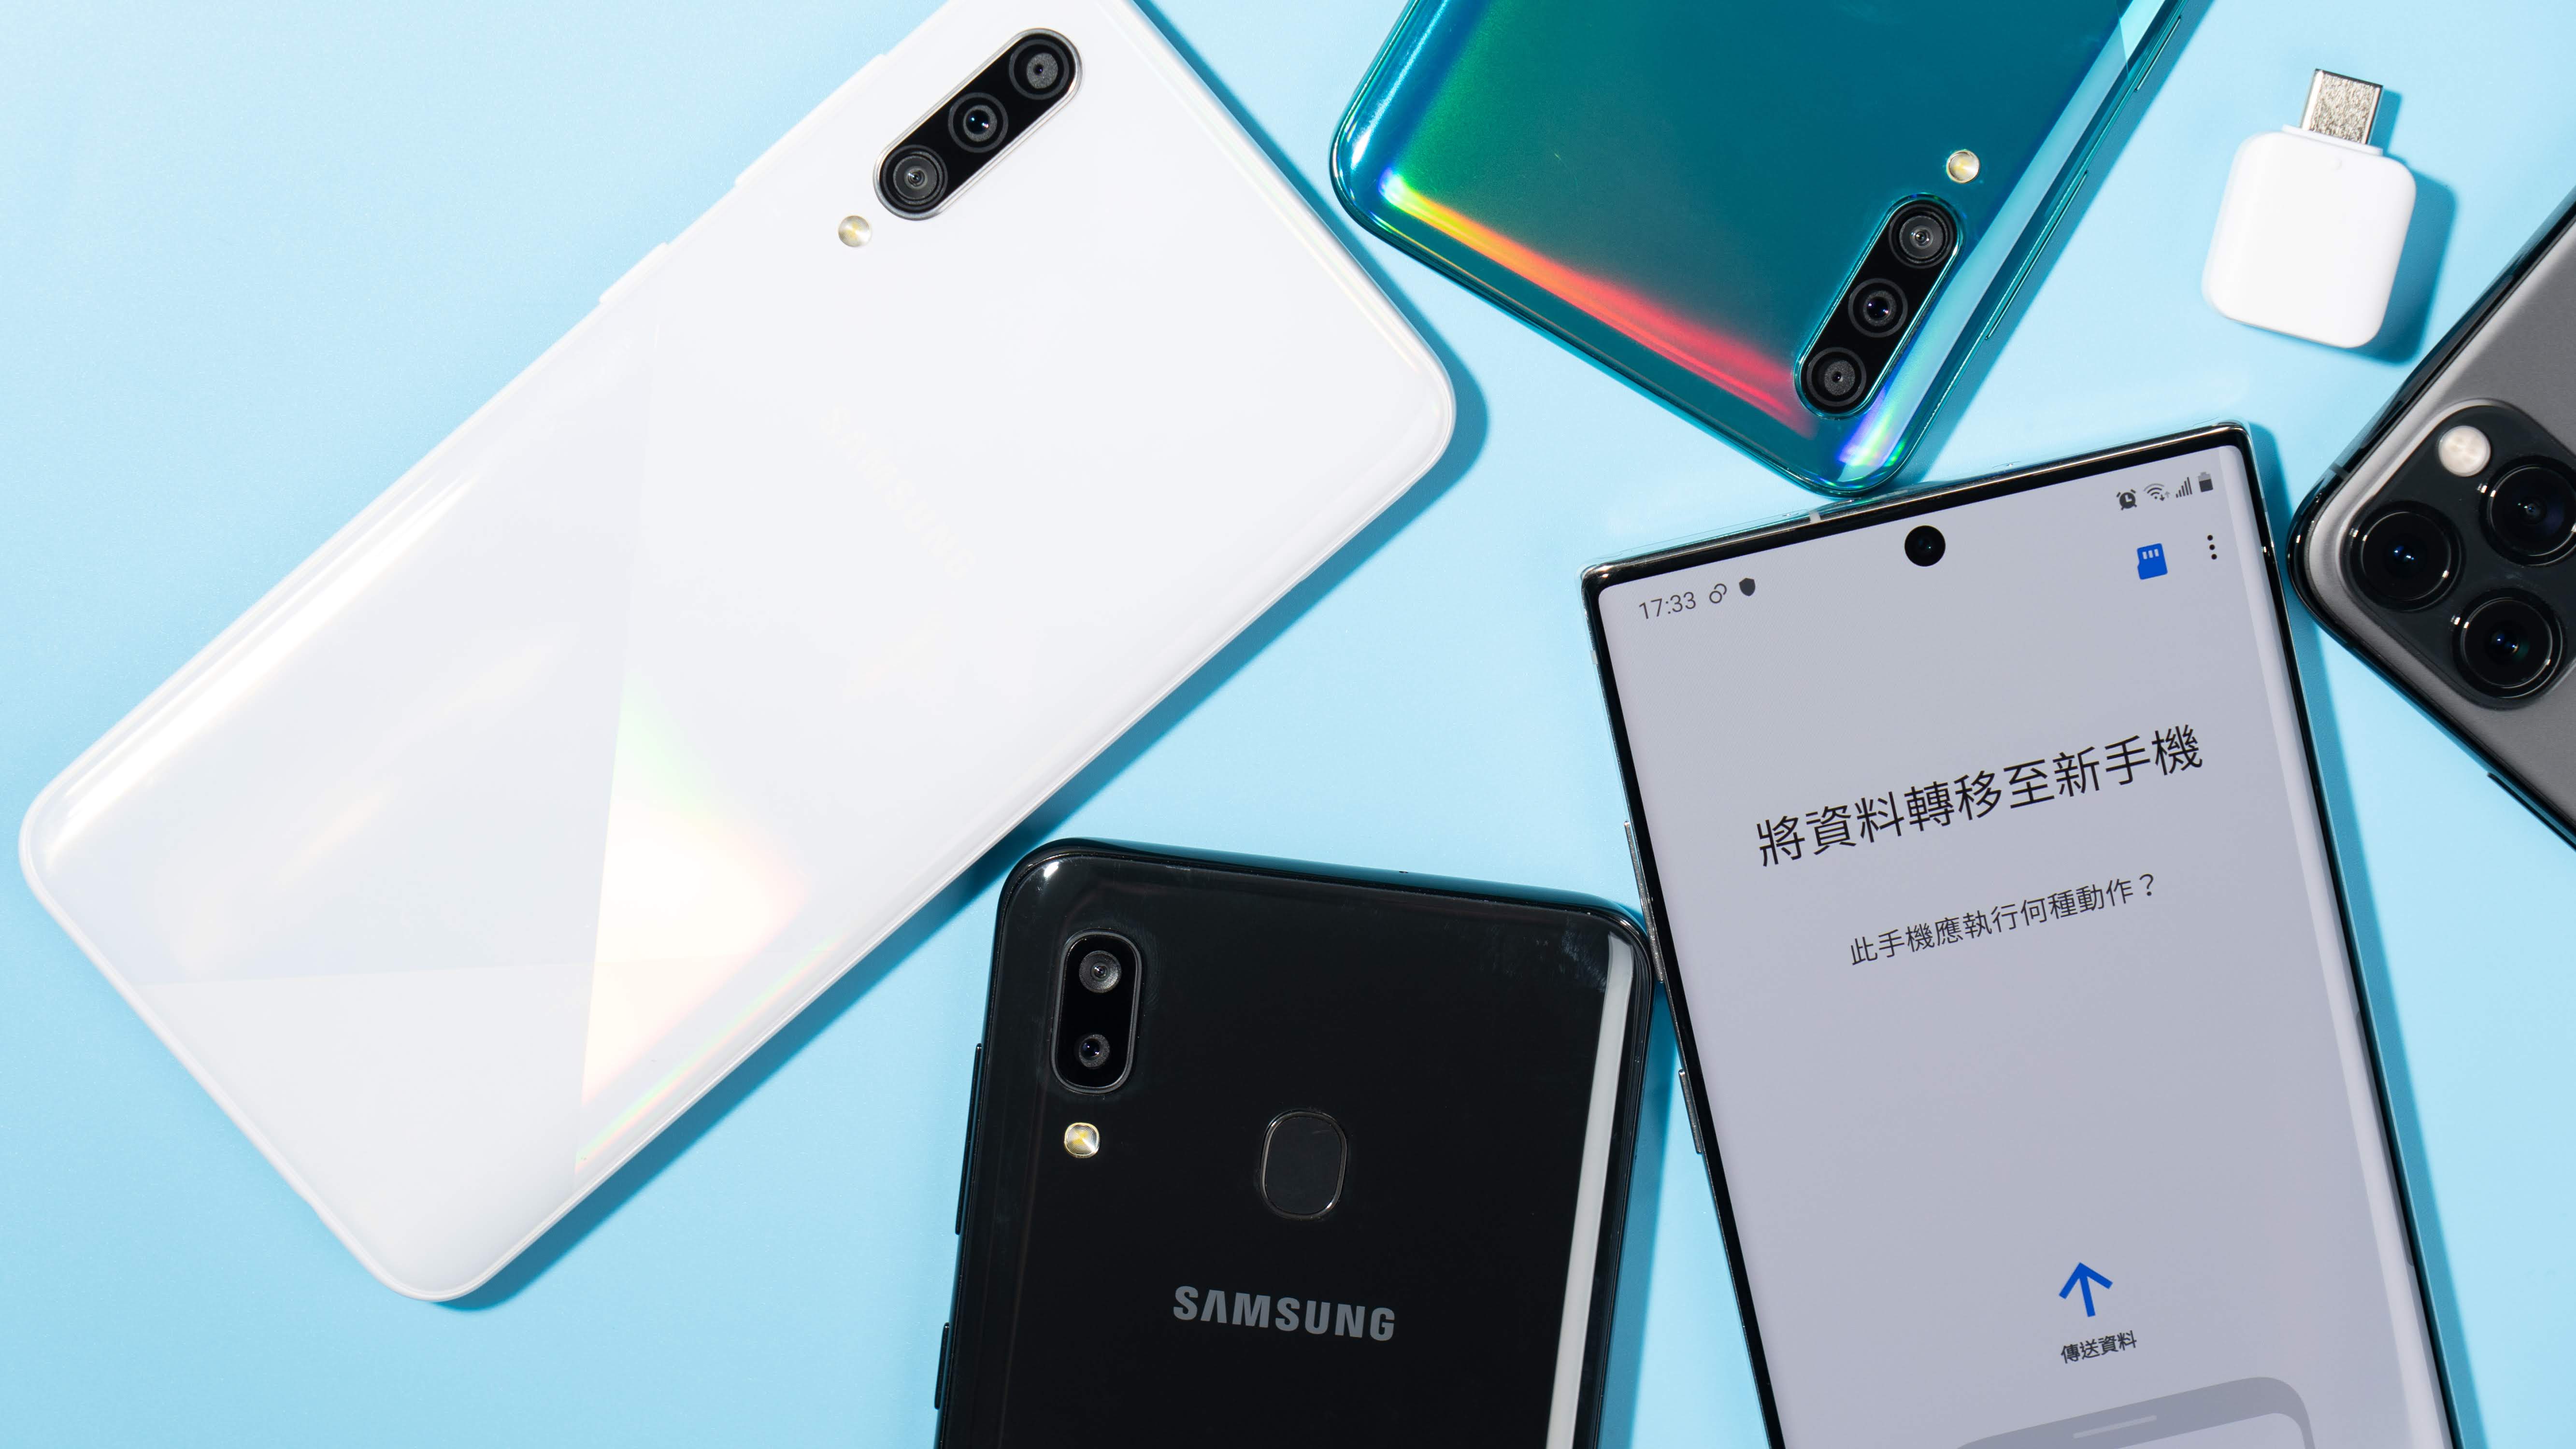 【換機教學】Samsung Smart Switch 換新的三星手機轉移資料超方便！｜iPhone / 非 Android 也能輕鬆轉移到 Samsung 手機、備份到 Galaxy Note10+ - 備份資料 - 科技狗 3C DOG